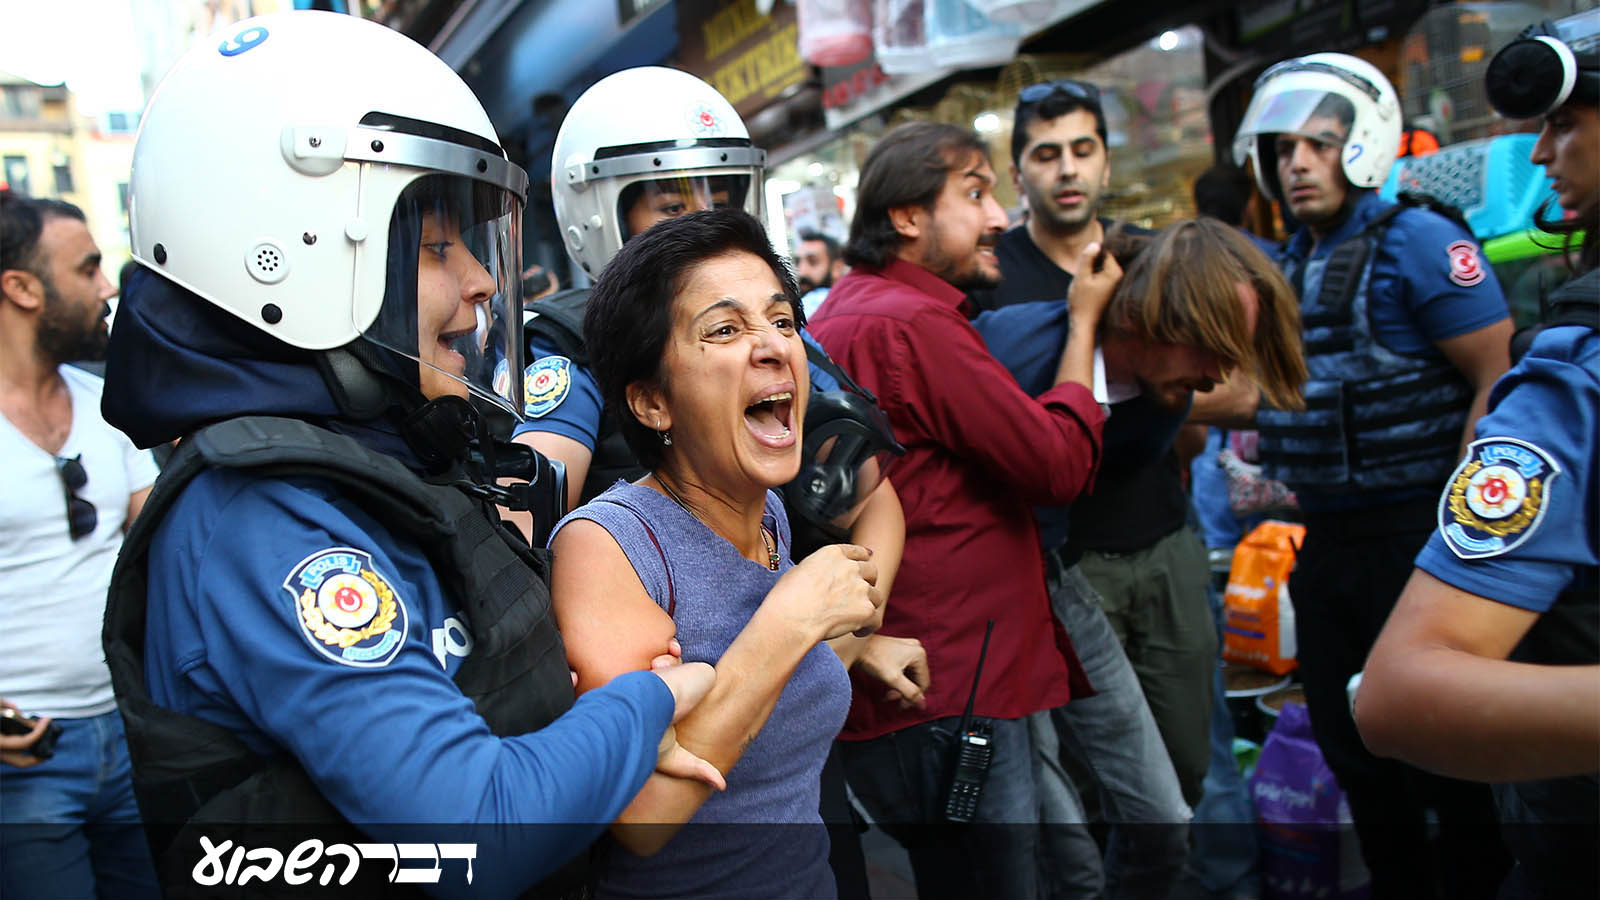 מפגינה נעצרת ע"י המשטרה הטורקית בהפגנת מחאה על תנאי הבטיחות בהקמת שדה התעופה החדש באיסטנבול. 15 בספטמבר 2018 (AP Photo/Emrah Gurel)